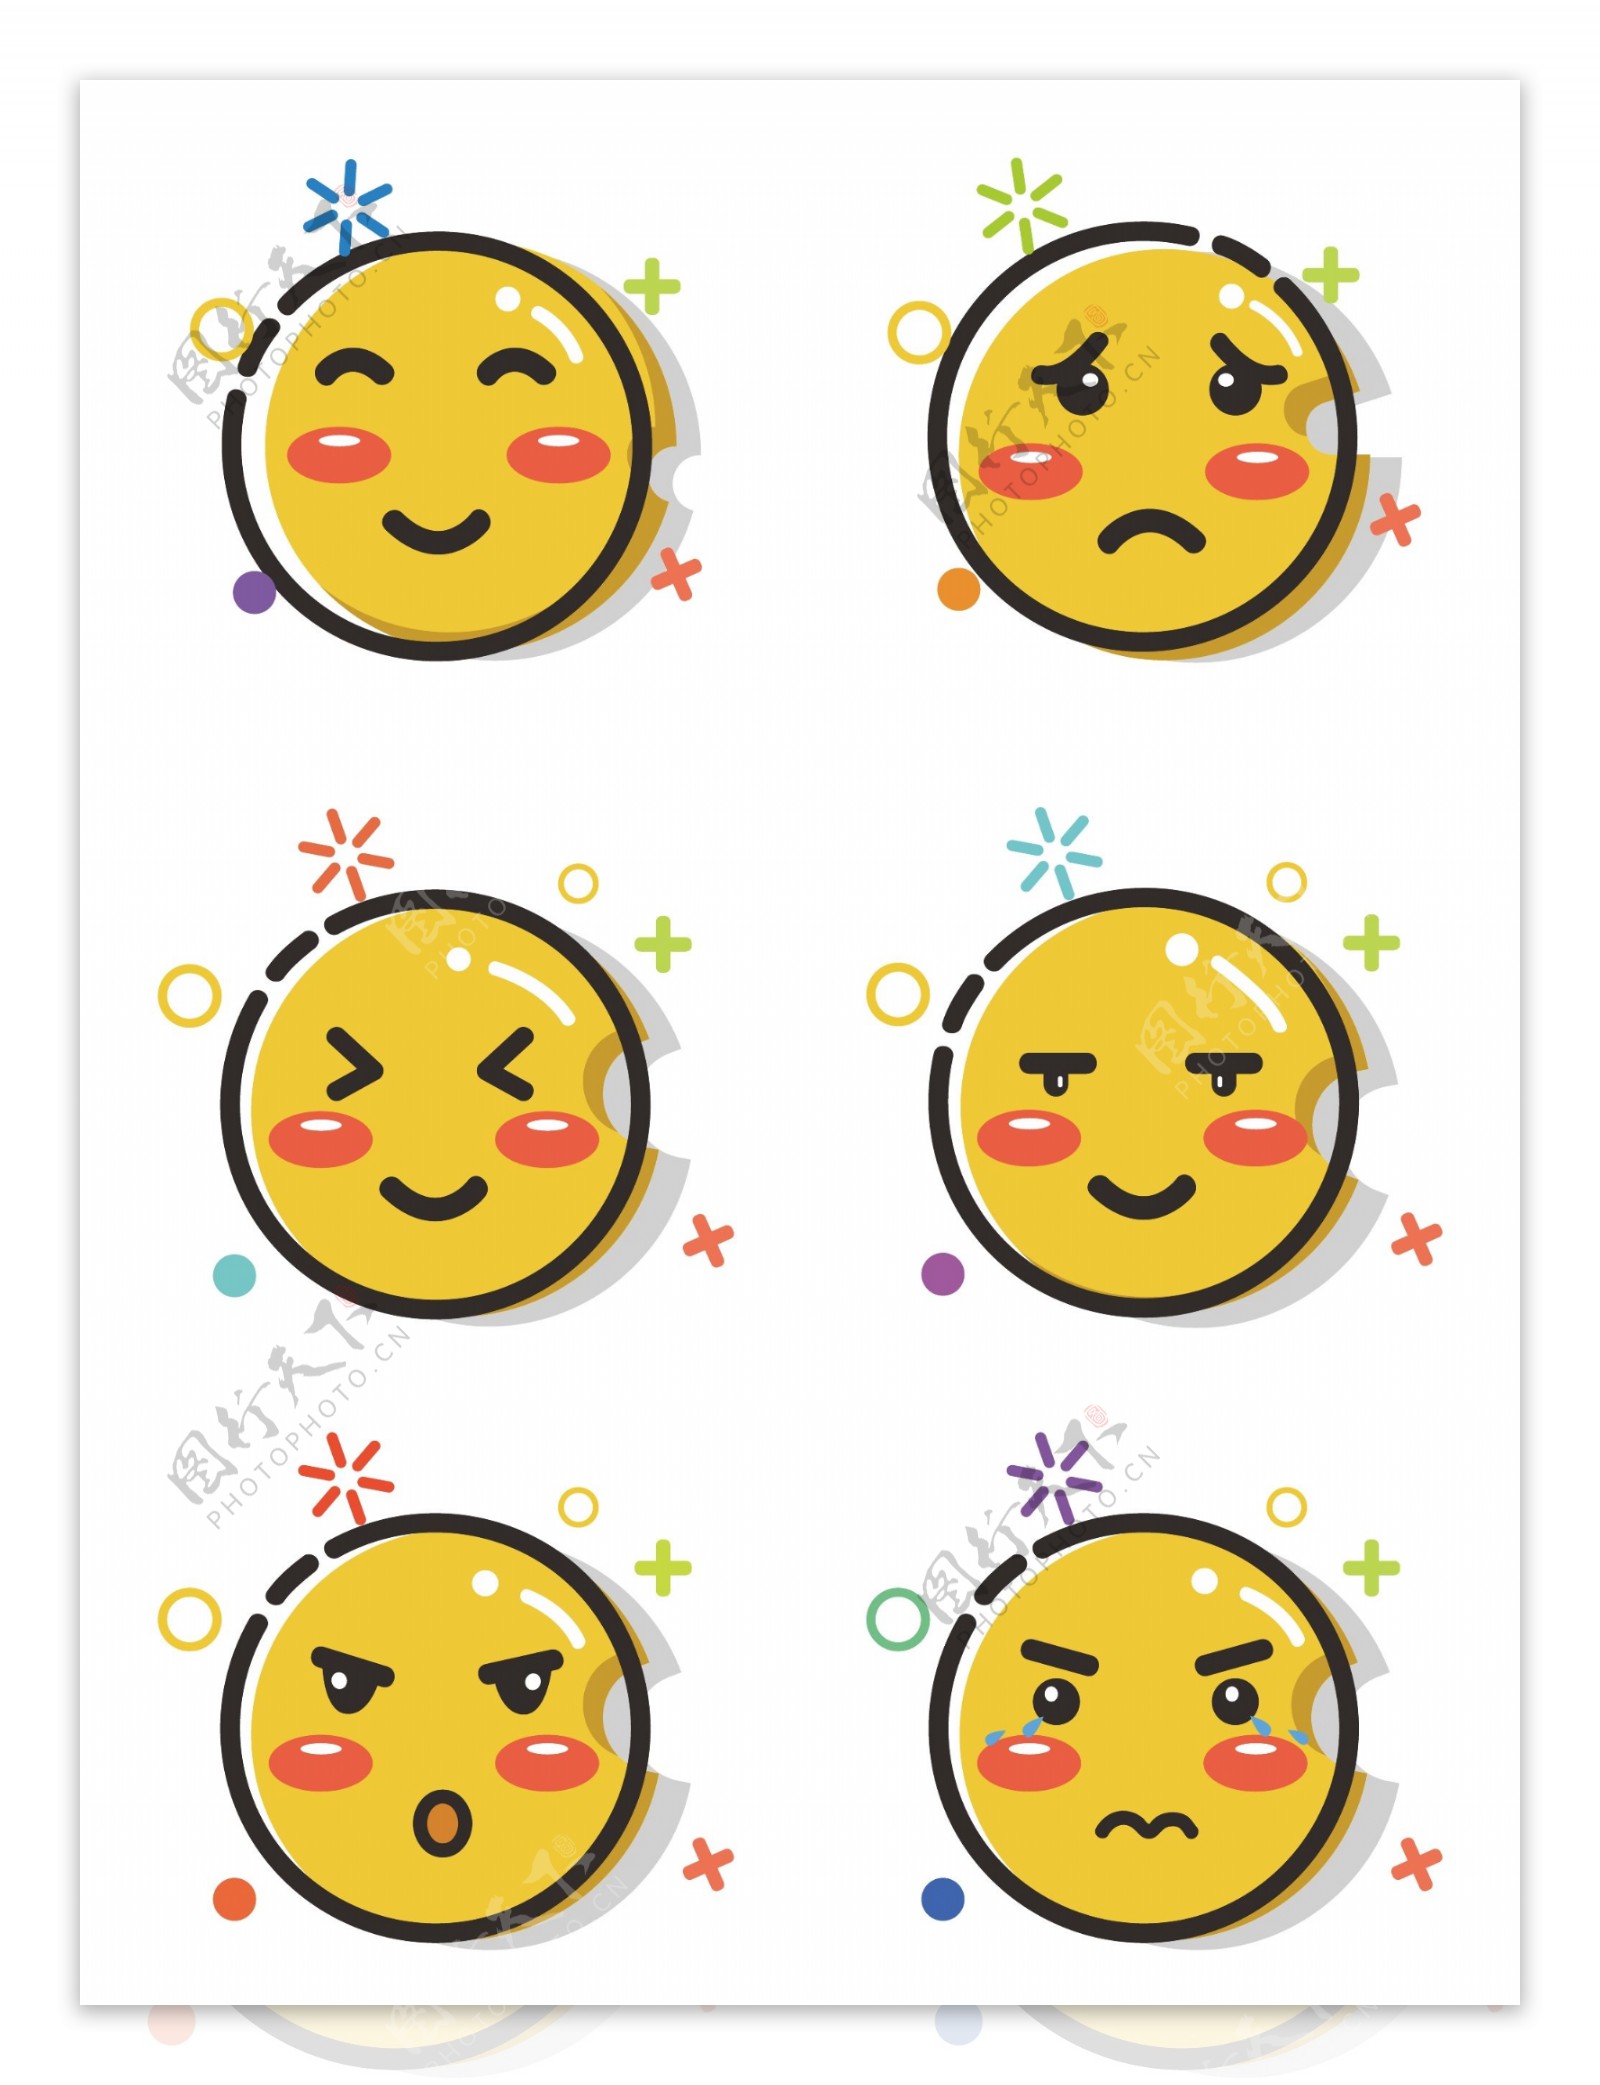 黄色小人可爱卡通表情包可商用元素